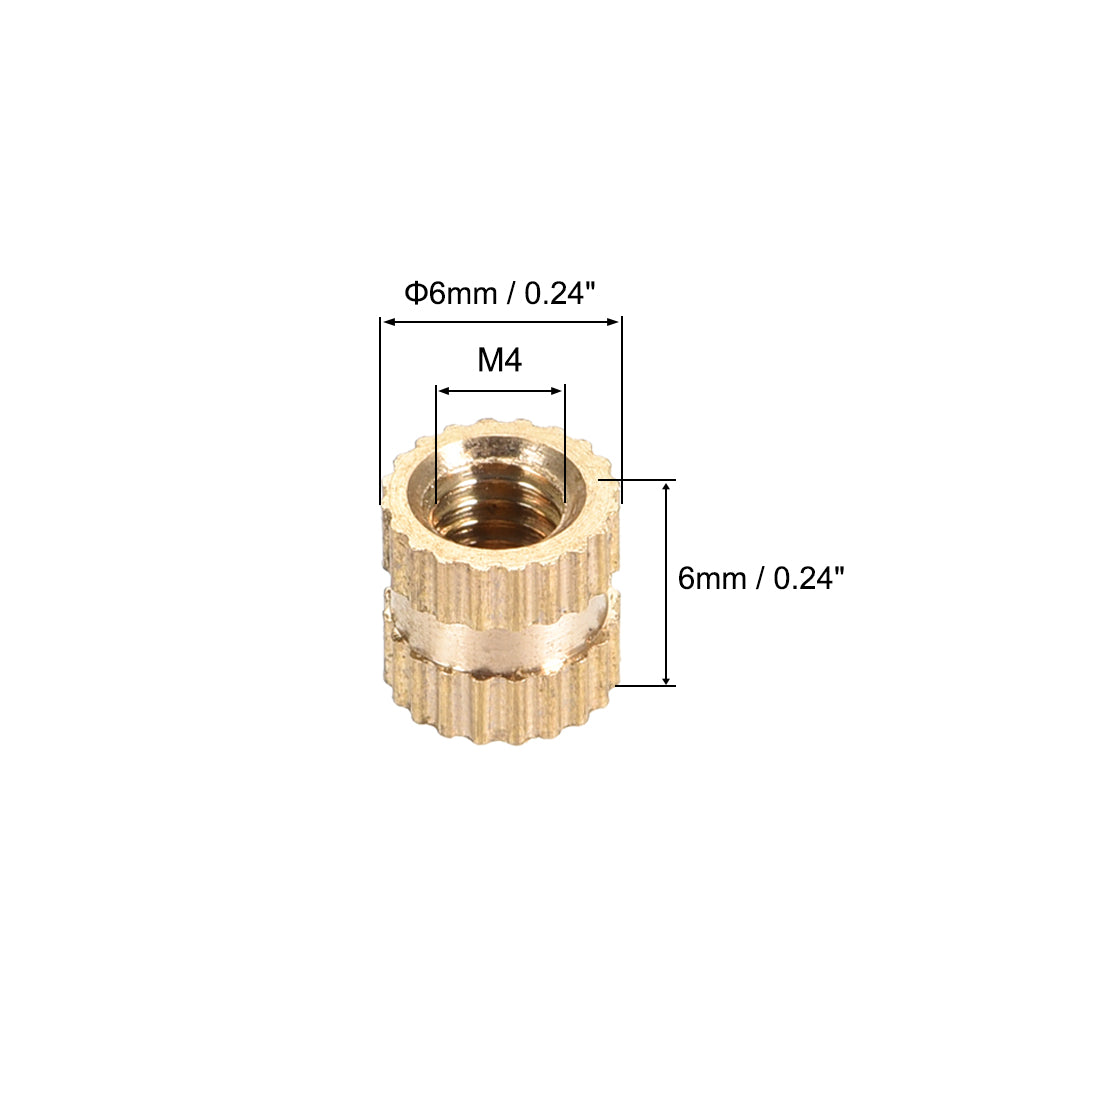 uxcell Uxcell Knurled Insert Nuts, M4 x 6mm(L) x 6mm(OD) Female Thread Brass Blind Embedment Assortment Kit, 50 Pcs